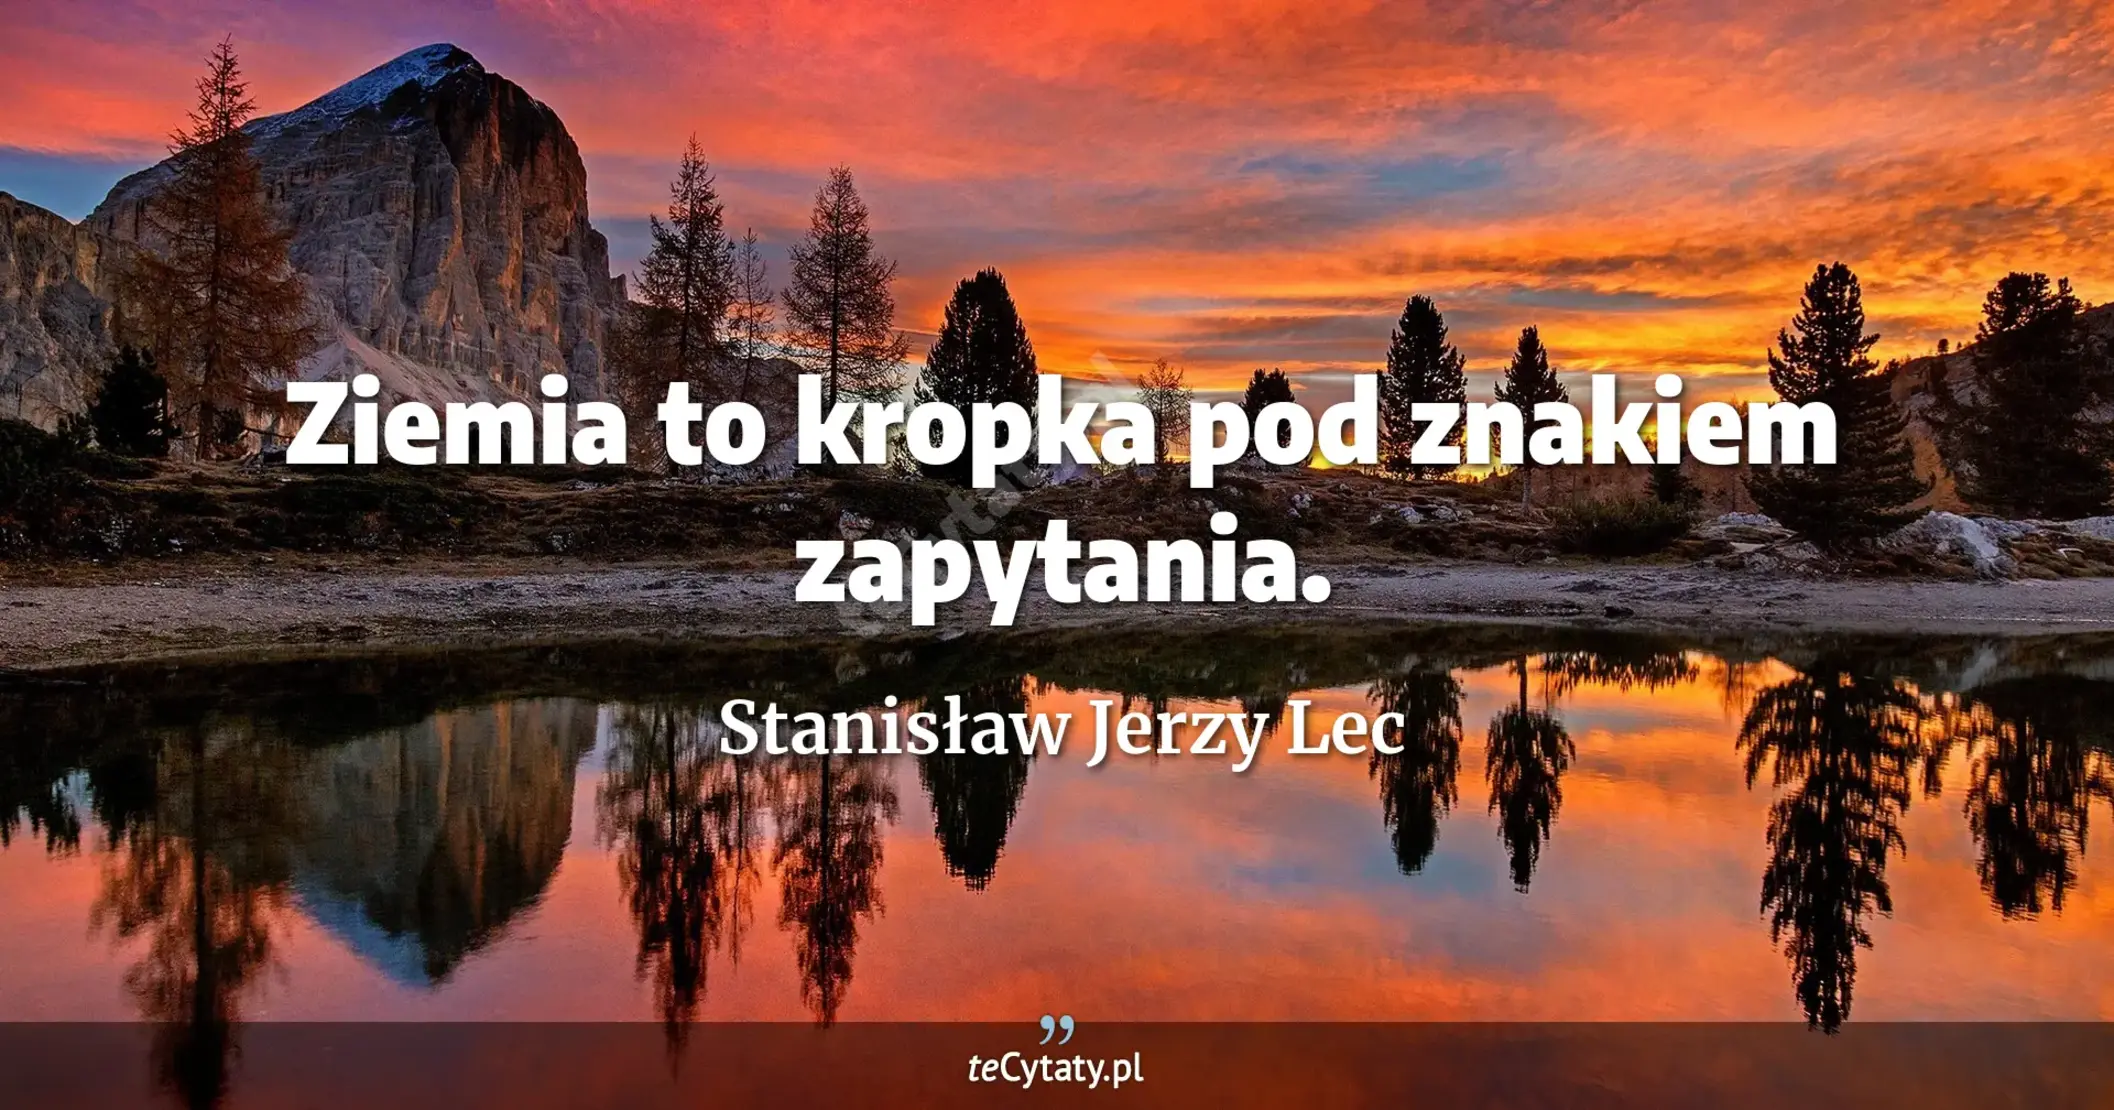 Ziemia to kropka pod znakiem zapytania. - Stanisław Jerzy Lec